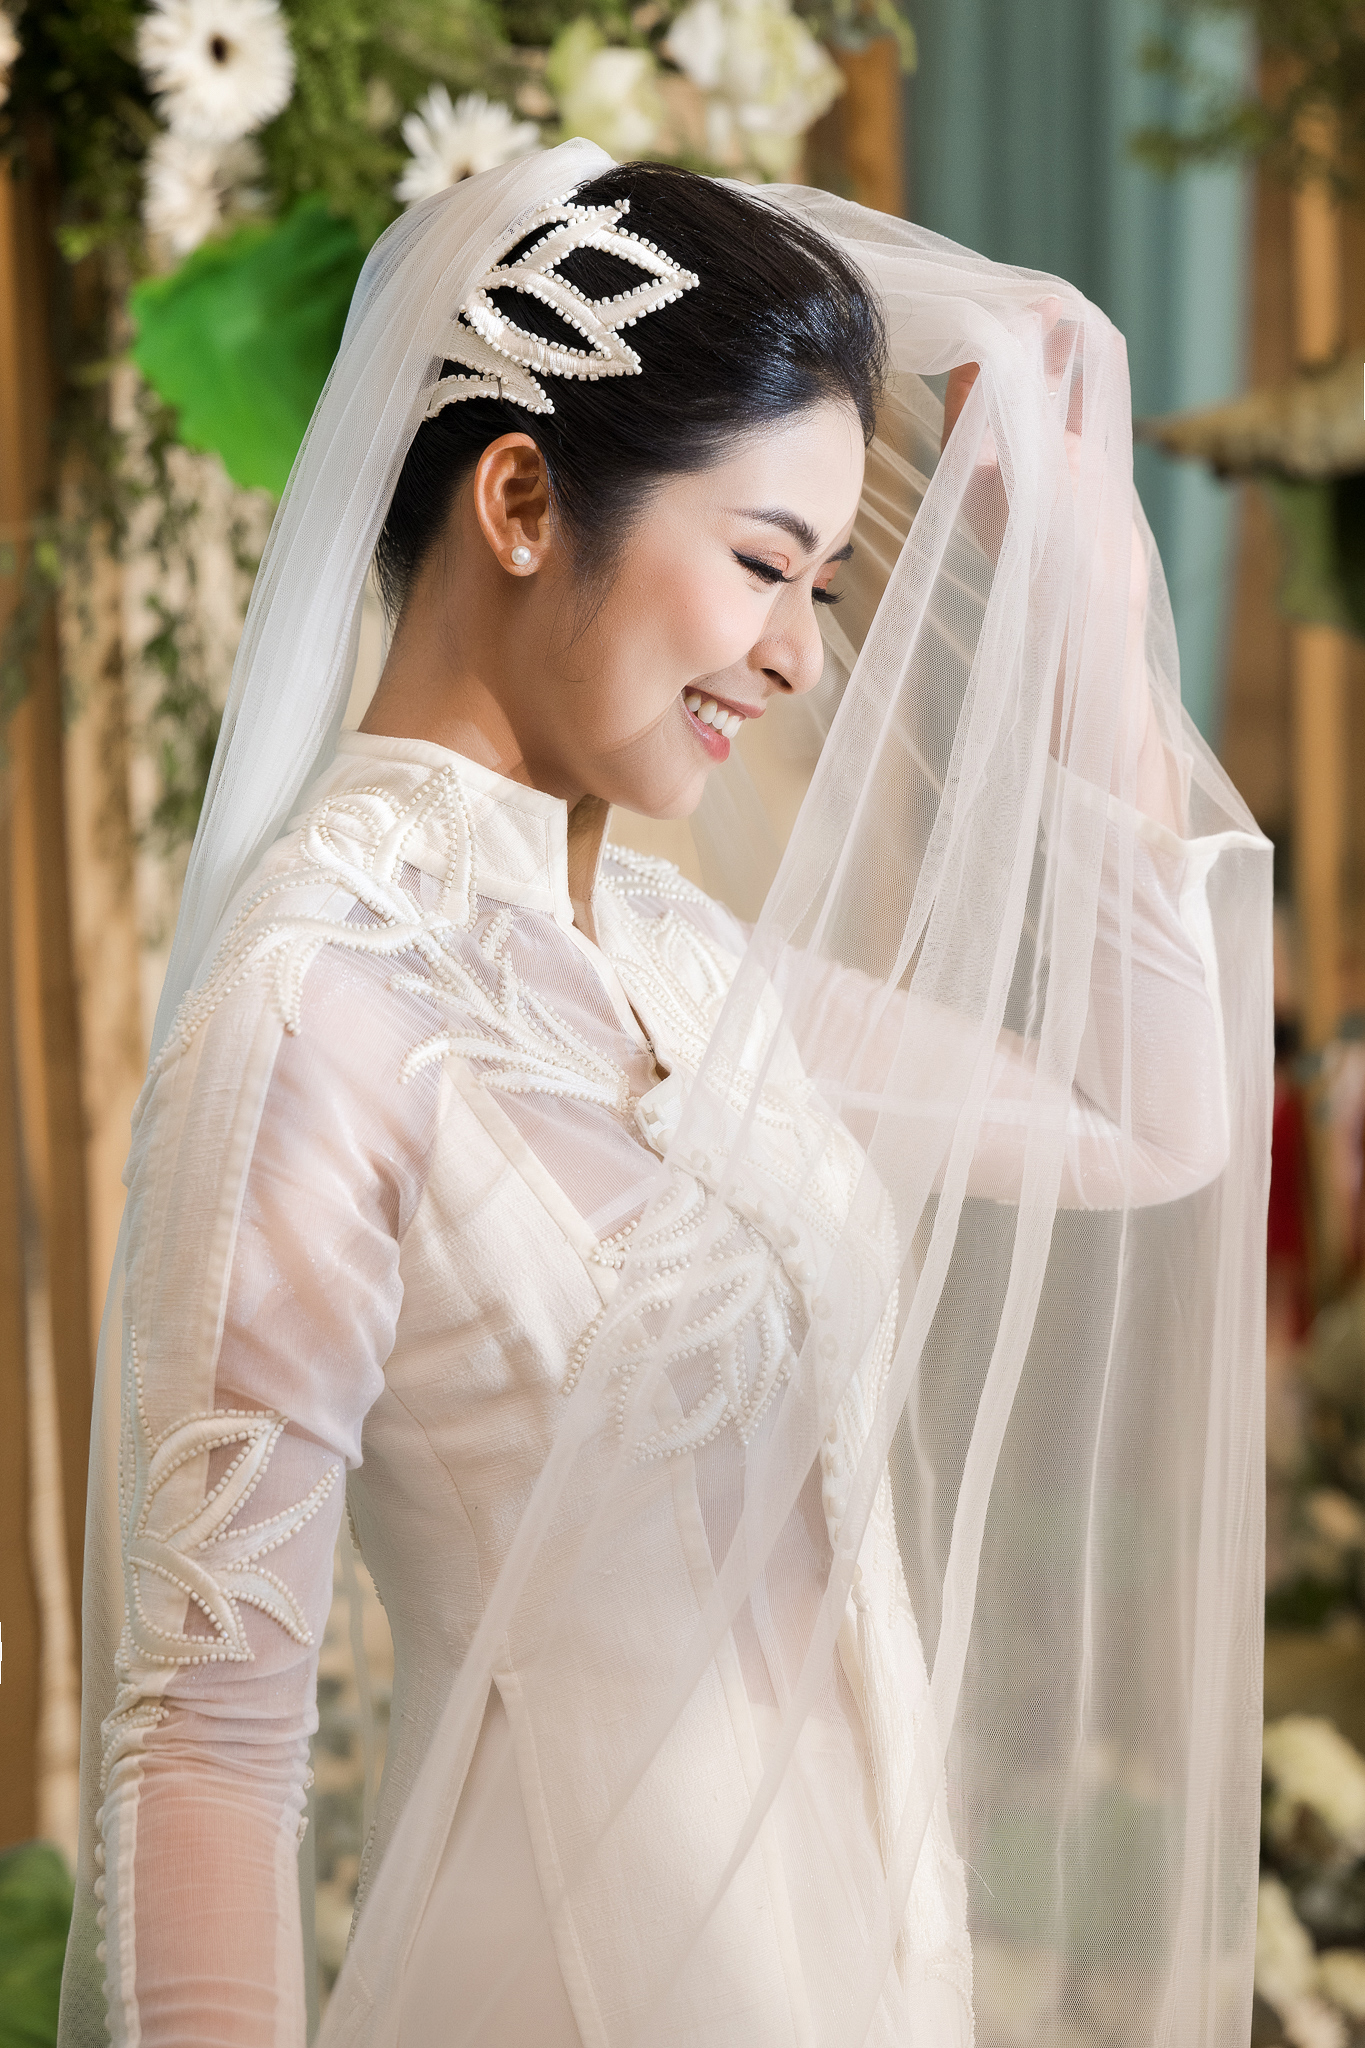 Lễ cưới của Hoa hậu Ngọc Hân: Cô dâu được chồng tặng quà bí mật, dàn mỹ nhân đổ bộ giữa không gian đẹp như mơ - Ảnh 11.